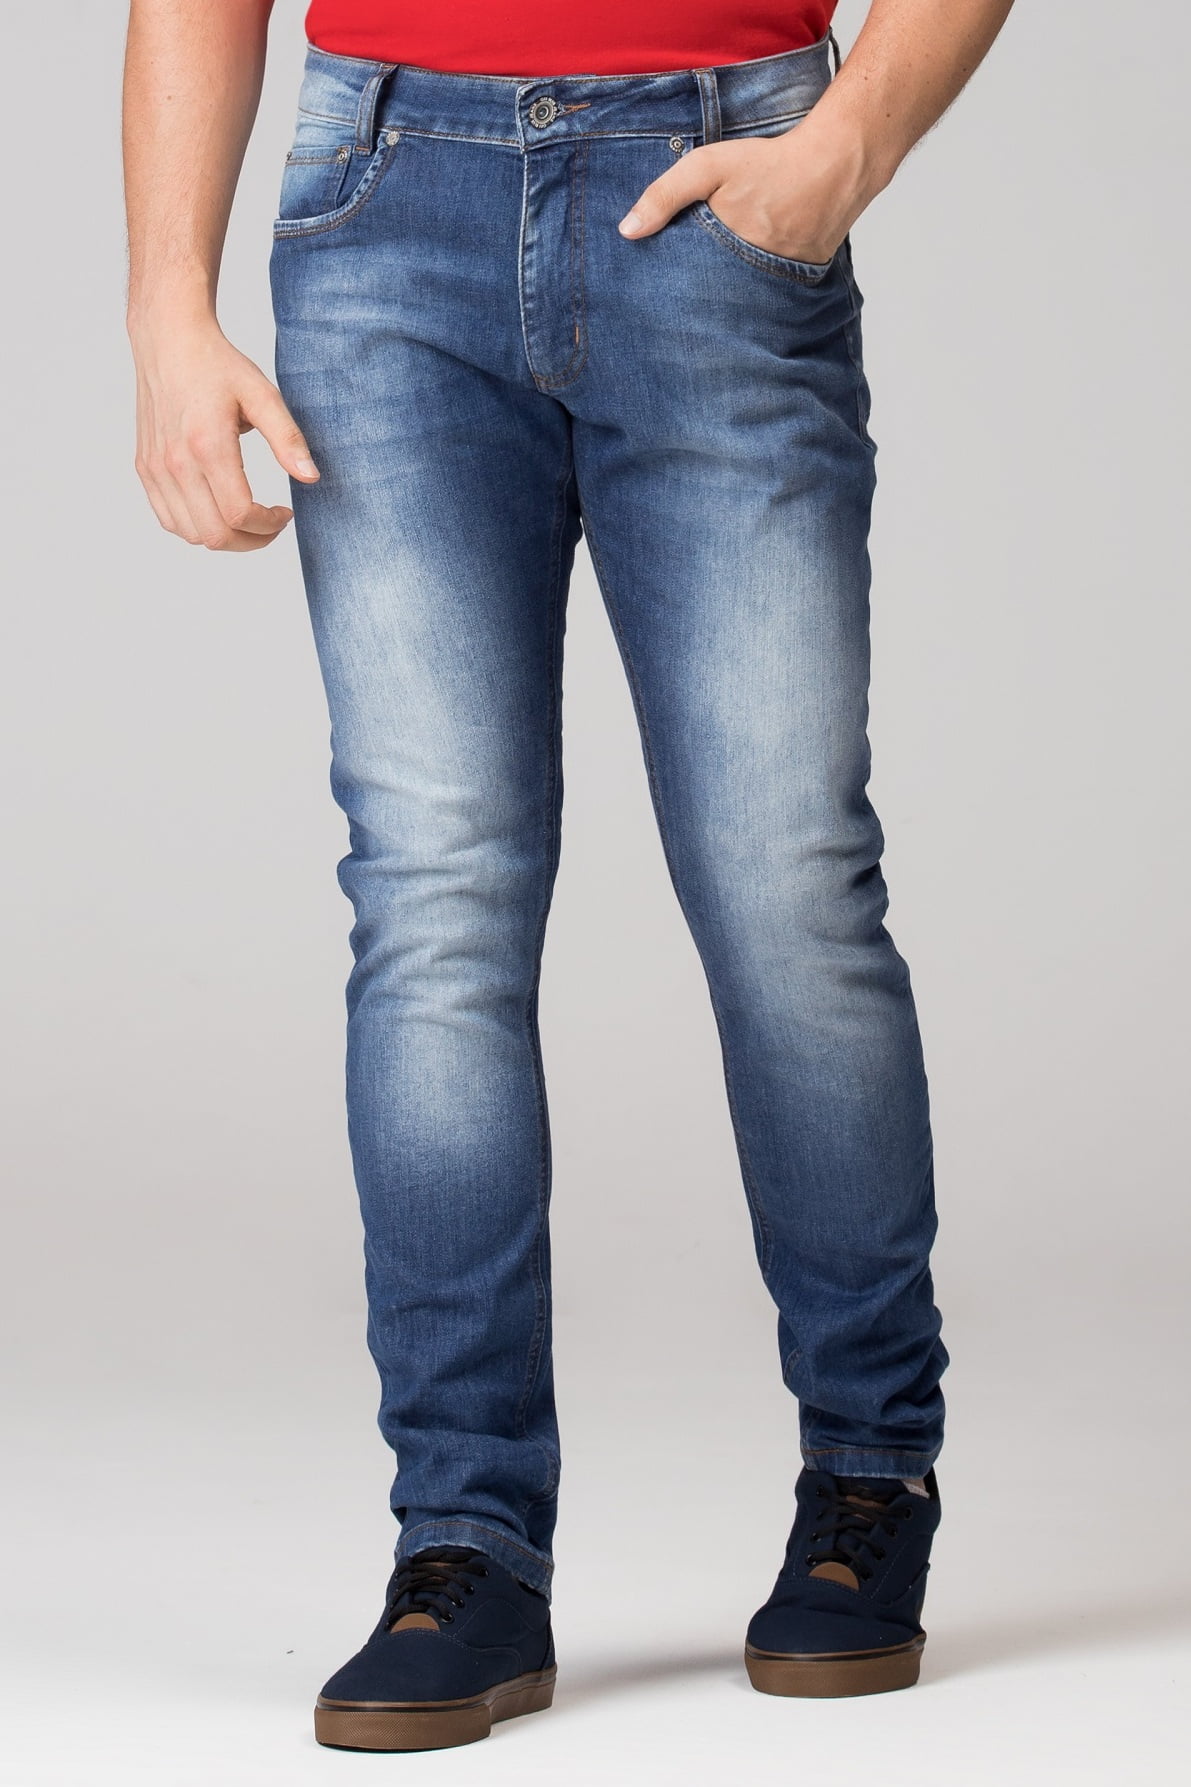 Calça Jeans Masculina M2021022